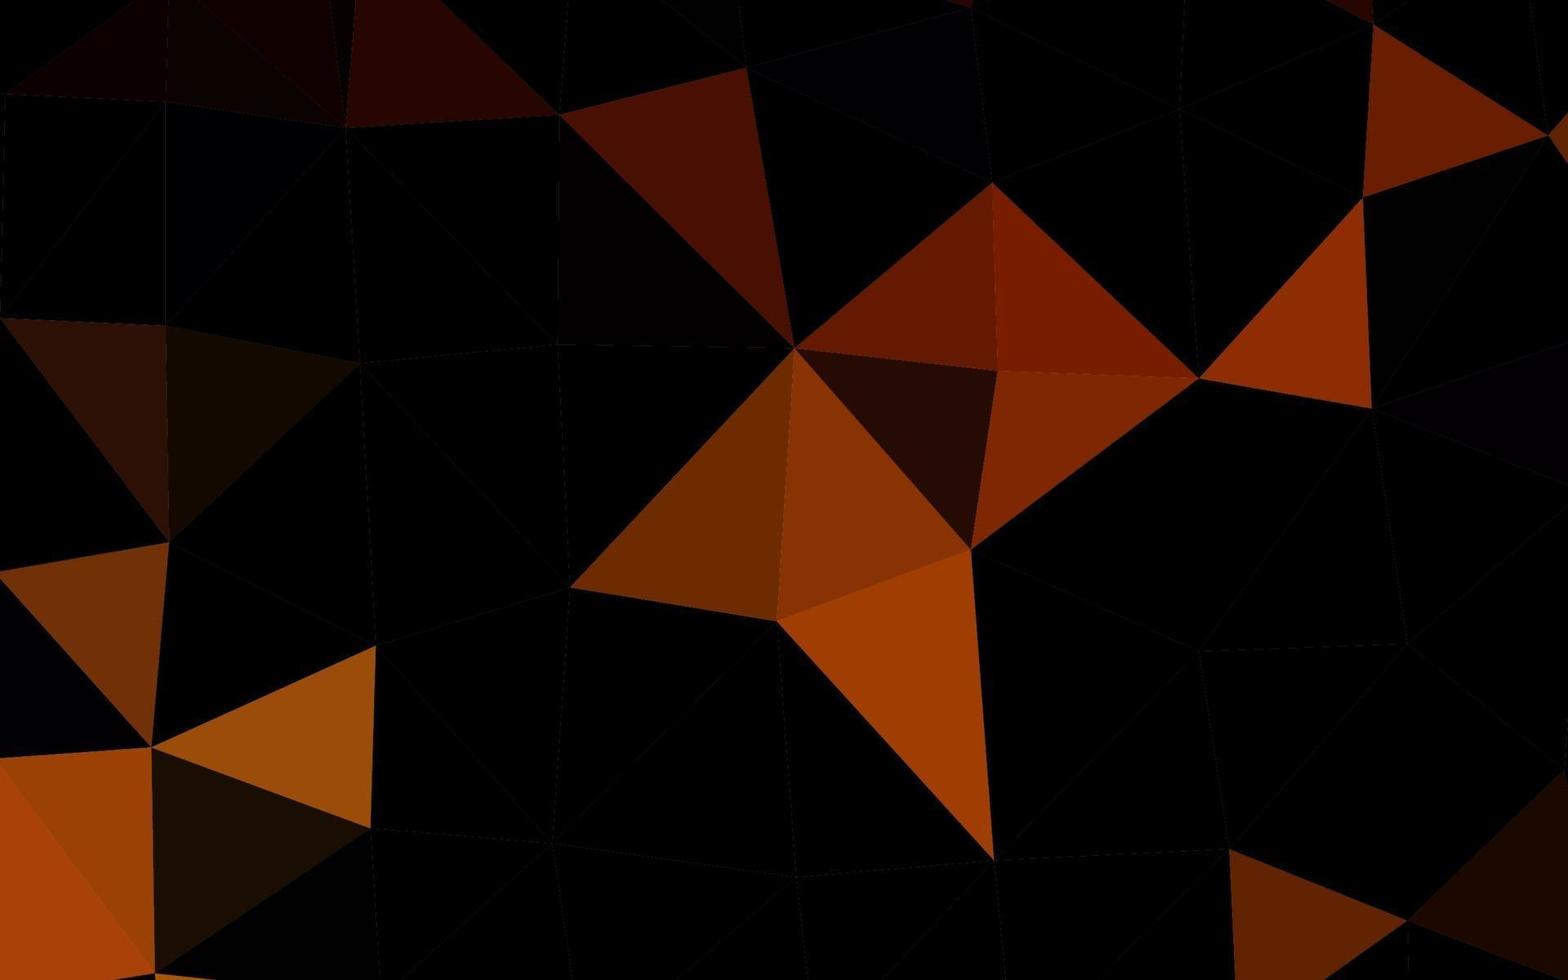 textura poligonal abstrata de vetor laranja escuro.